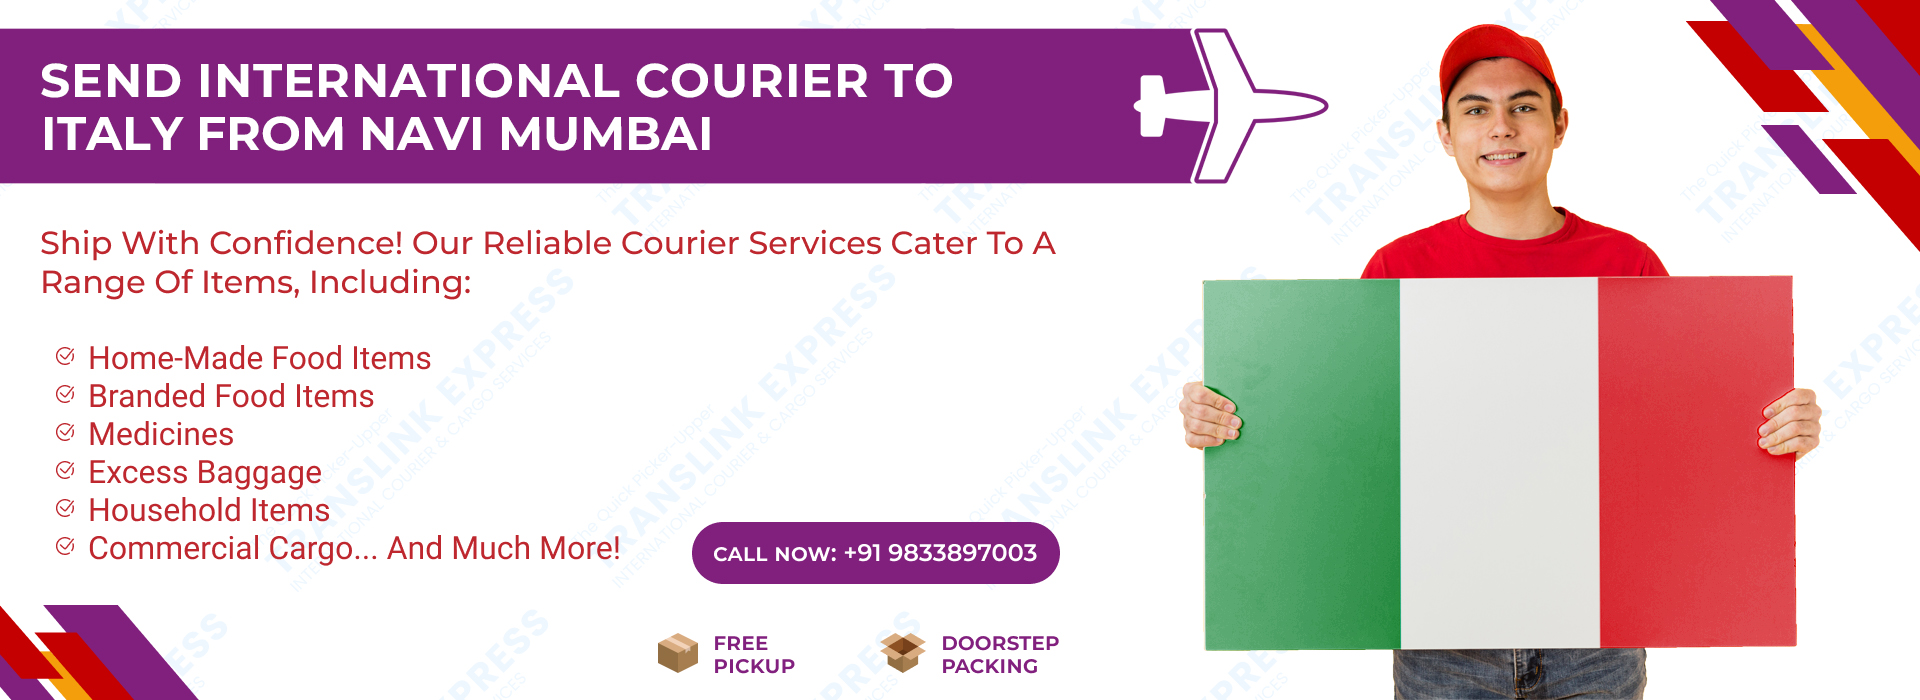 Courier to Italy From Navi Mumbai